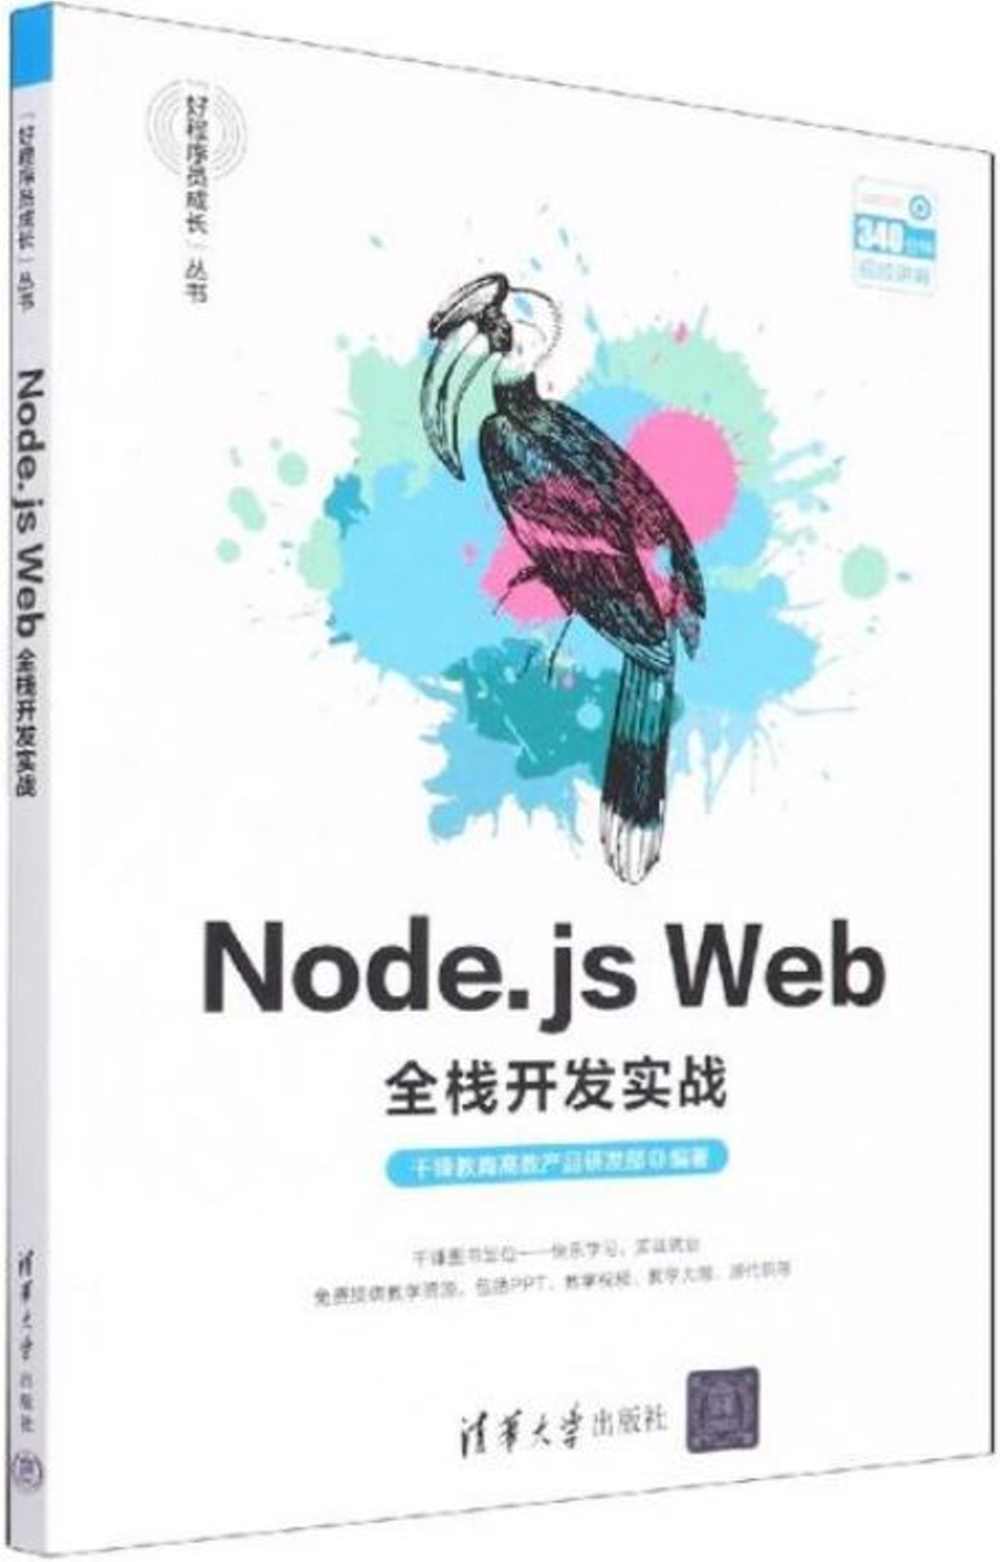 Node.js Web全棧開發實戰